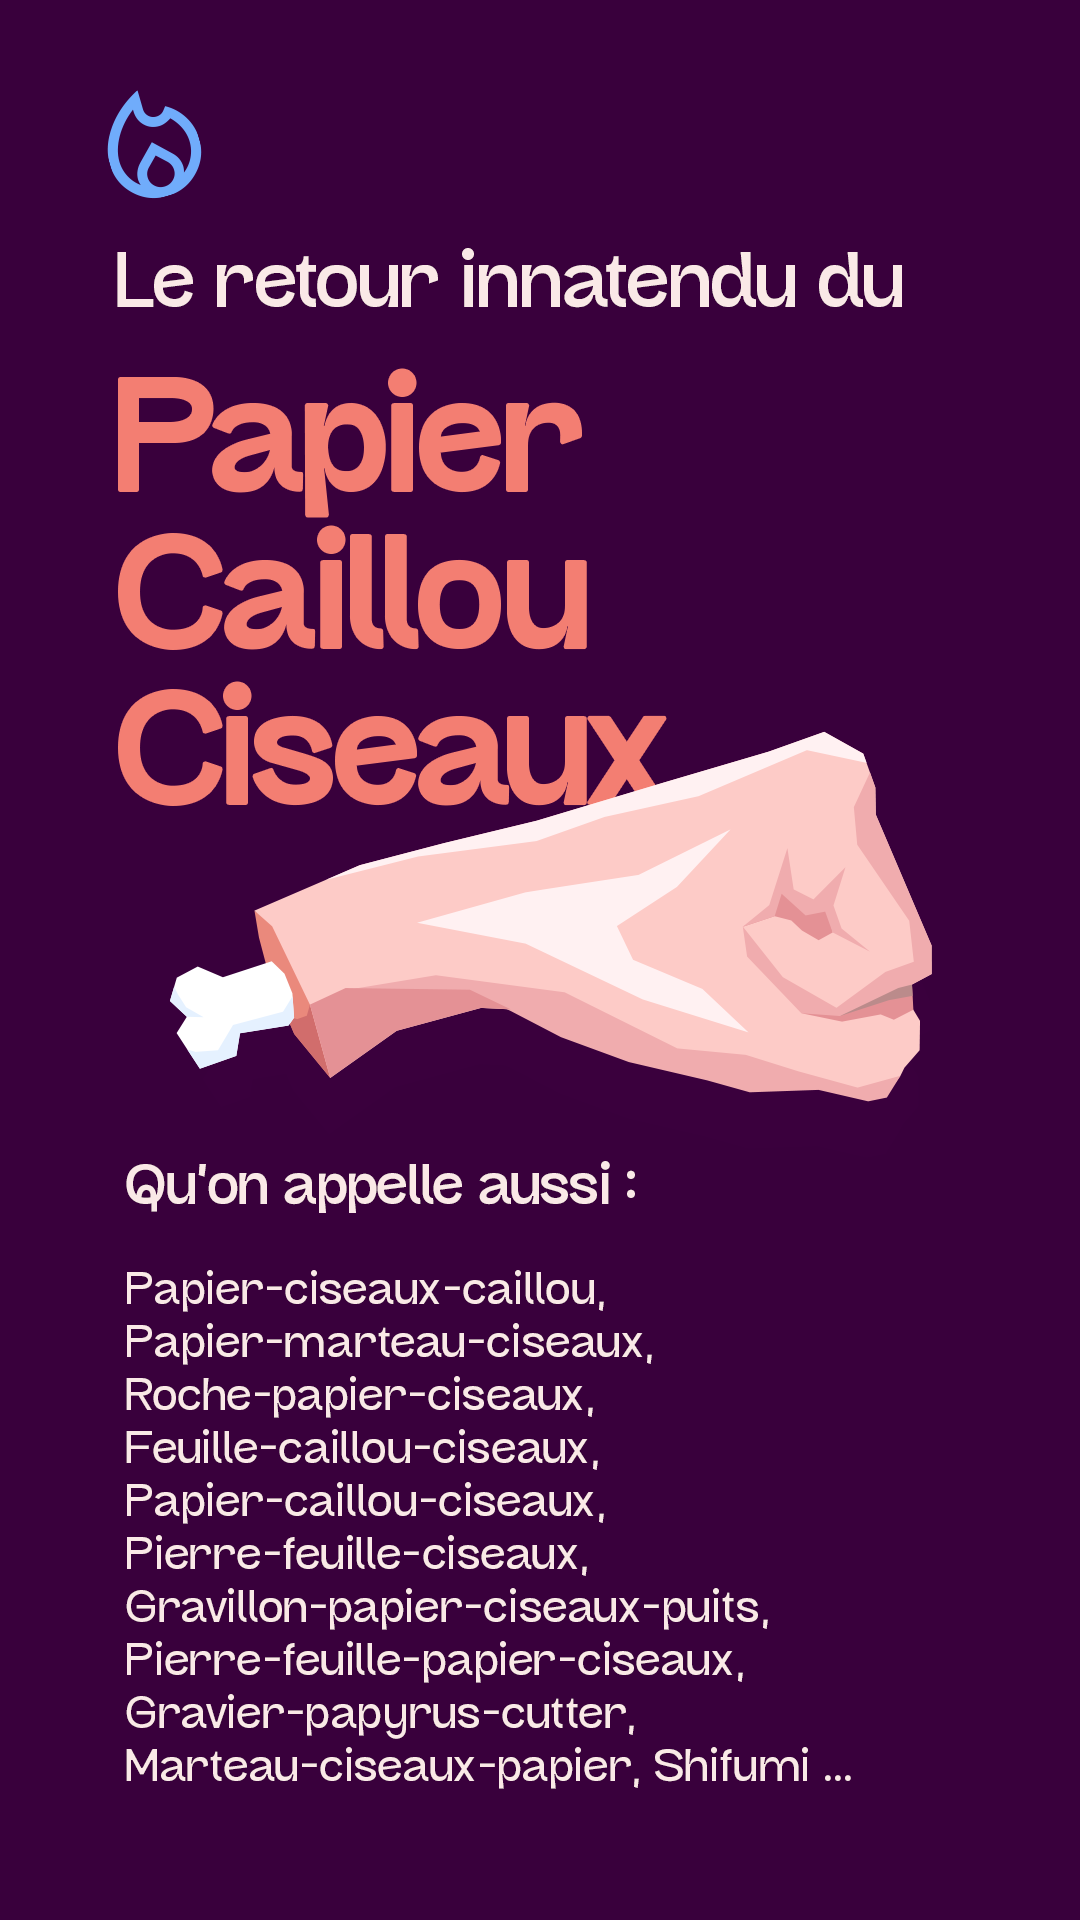 Papier Caillou Ciseaux遊戲截圖